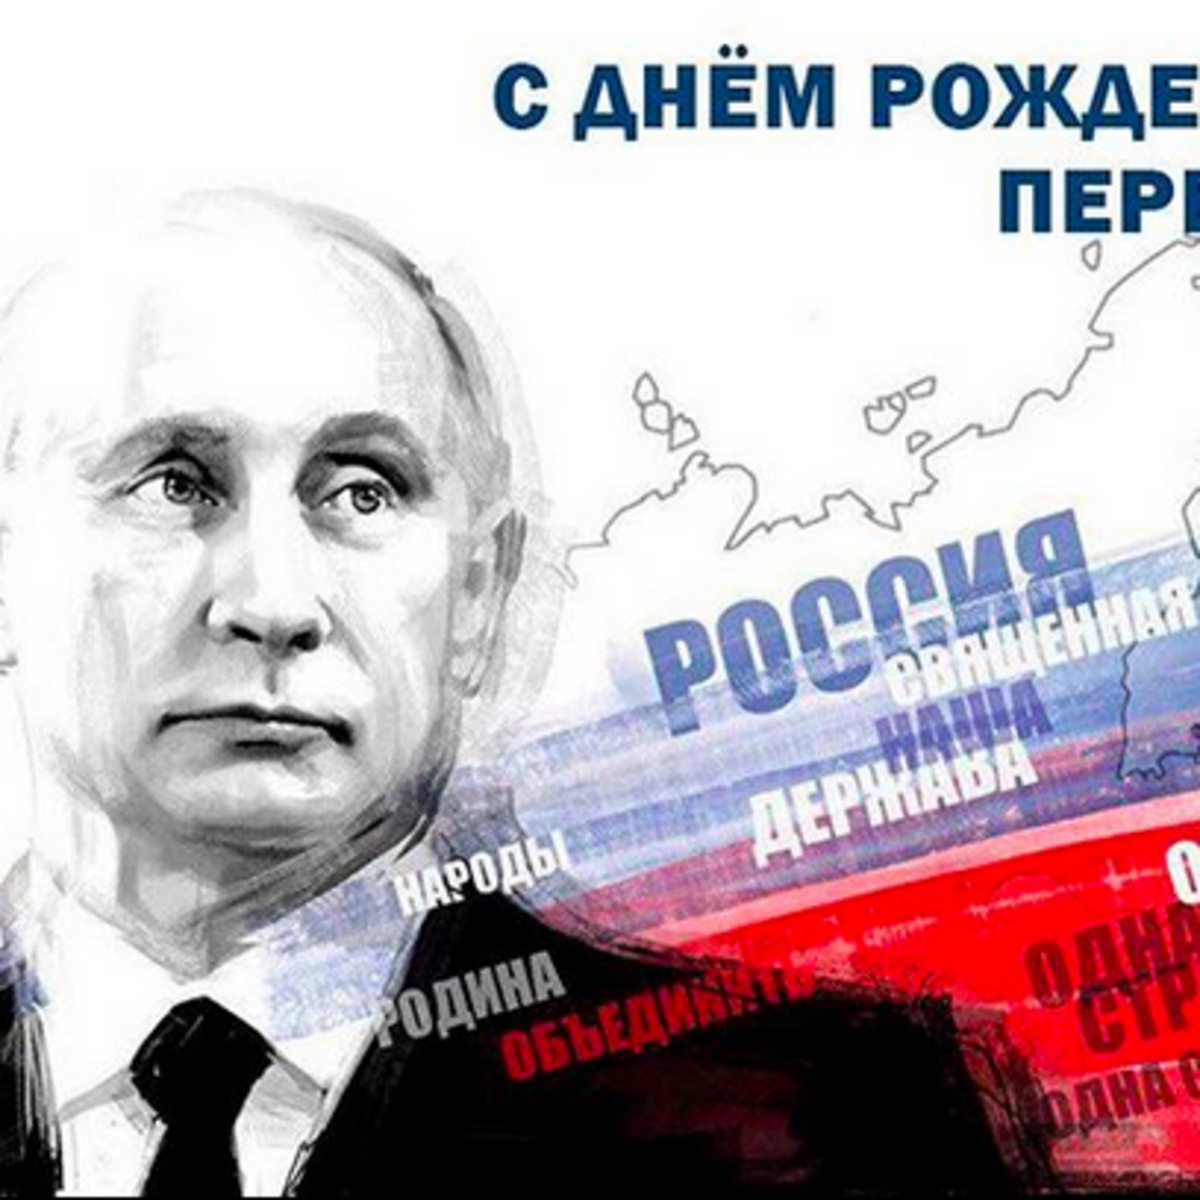 Голосовые поздравления с Днем рождения от президента Путина